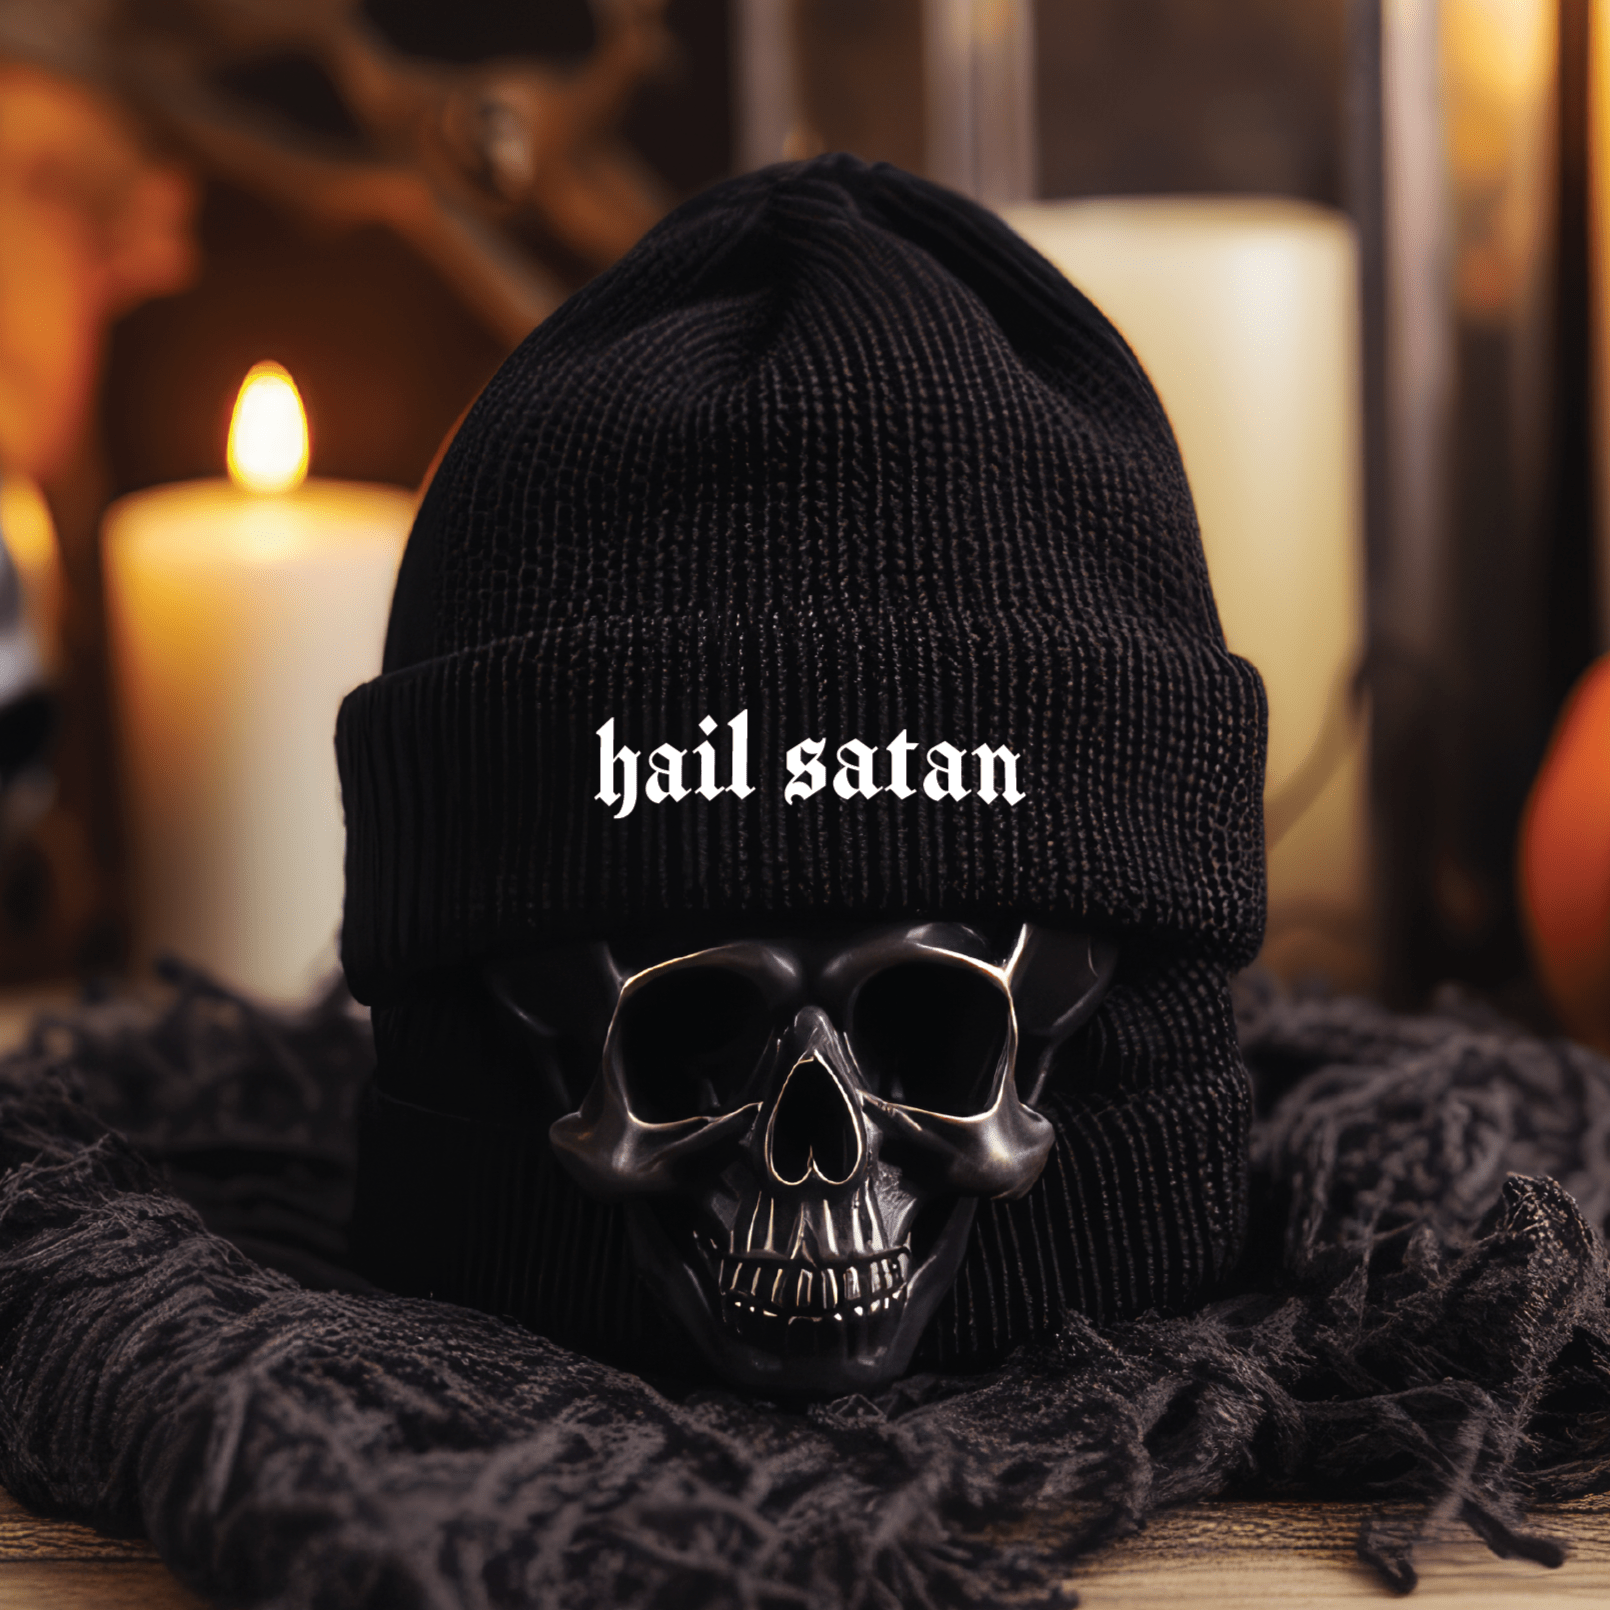 Hail Satan Gothic Knit Beanie - Goth Cloth Co.4559597_8941